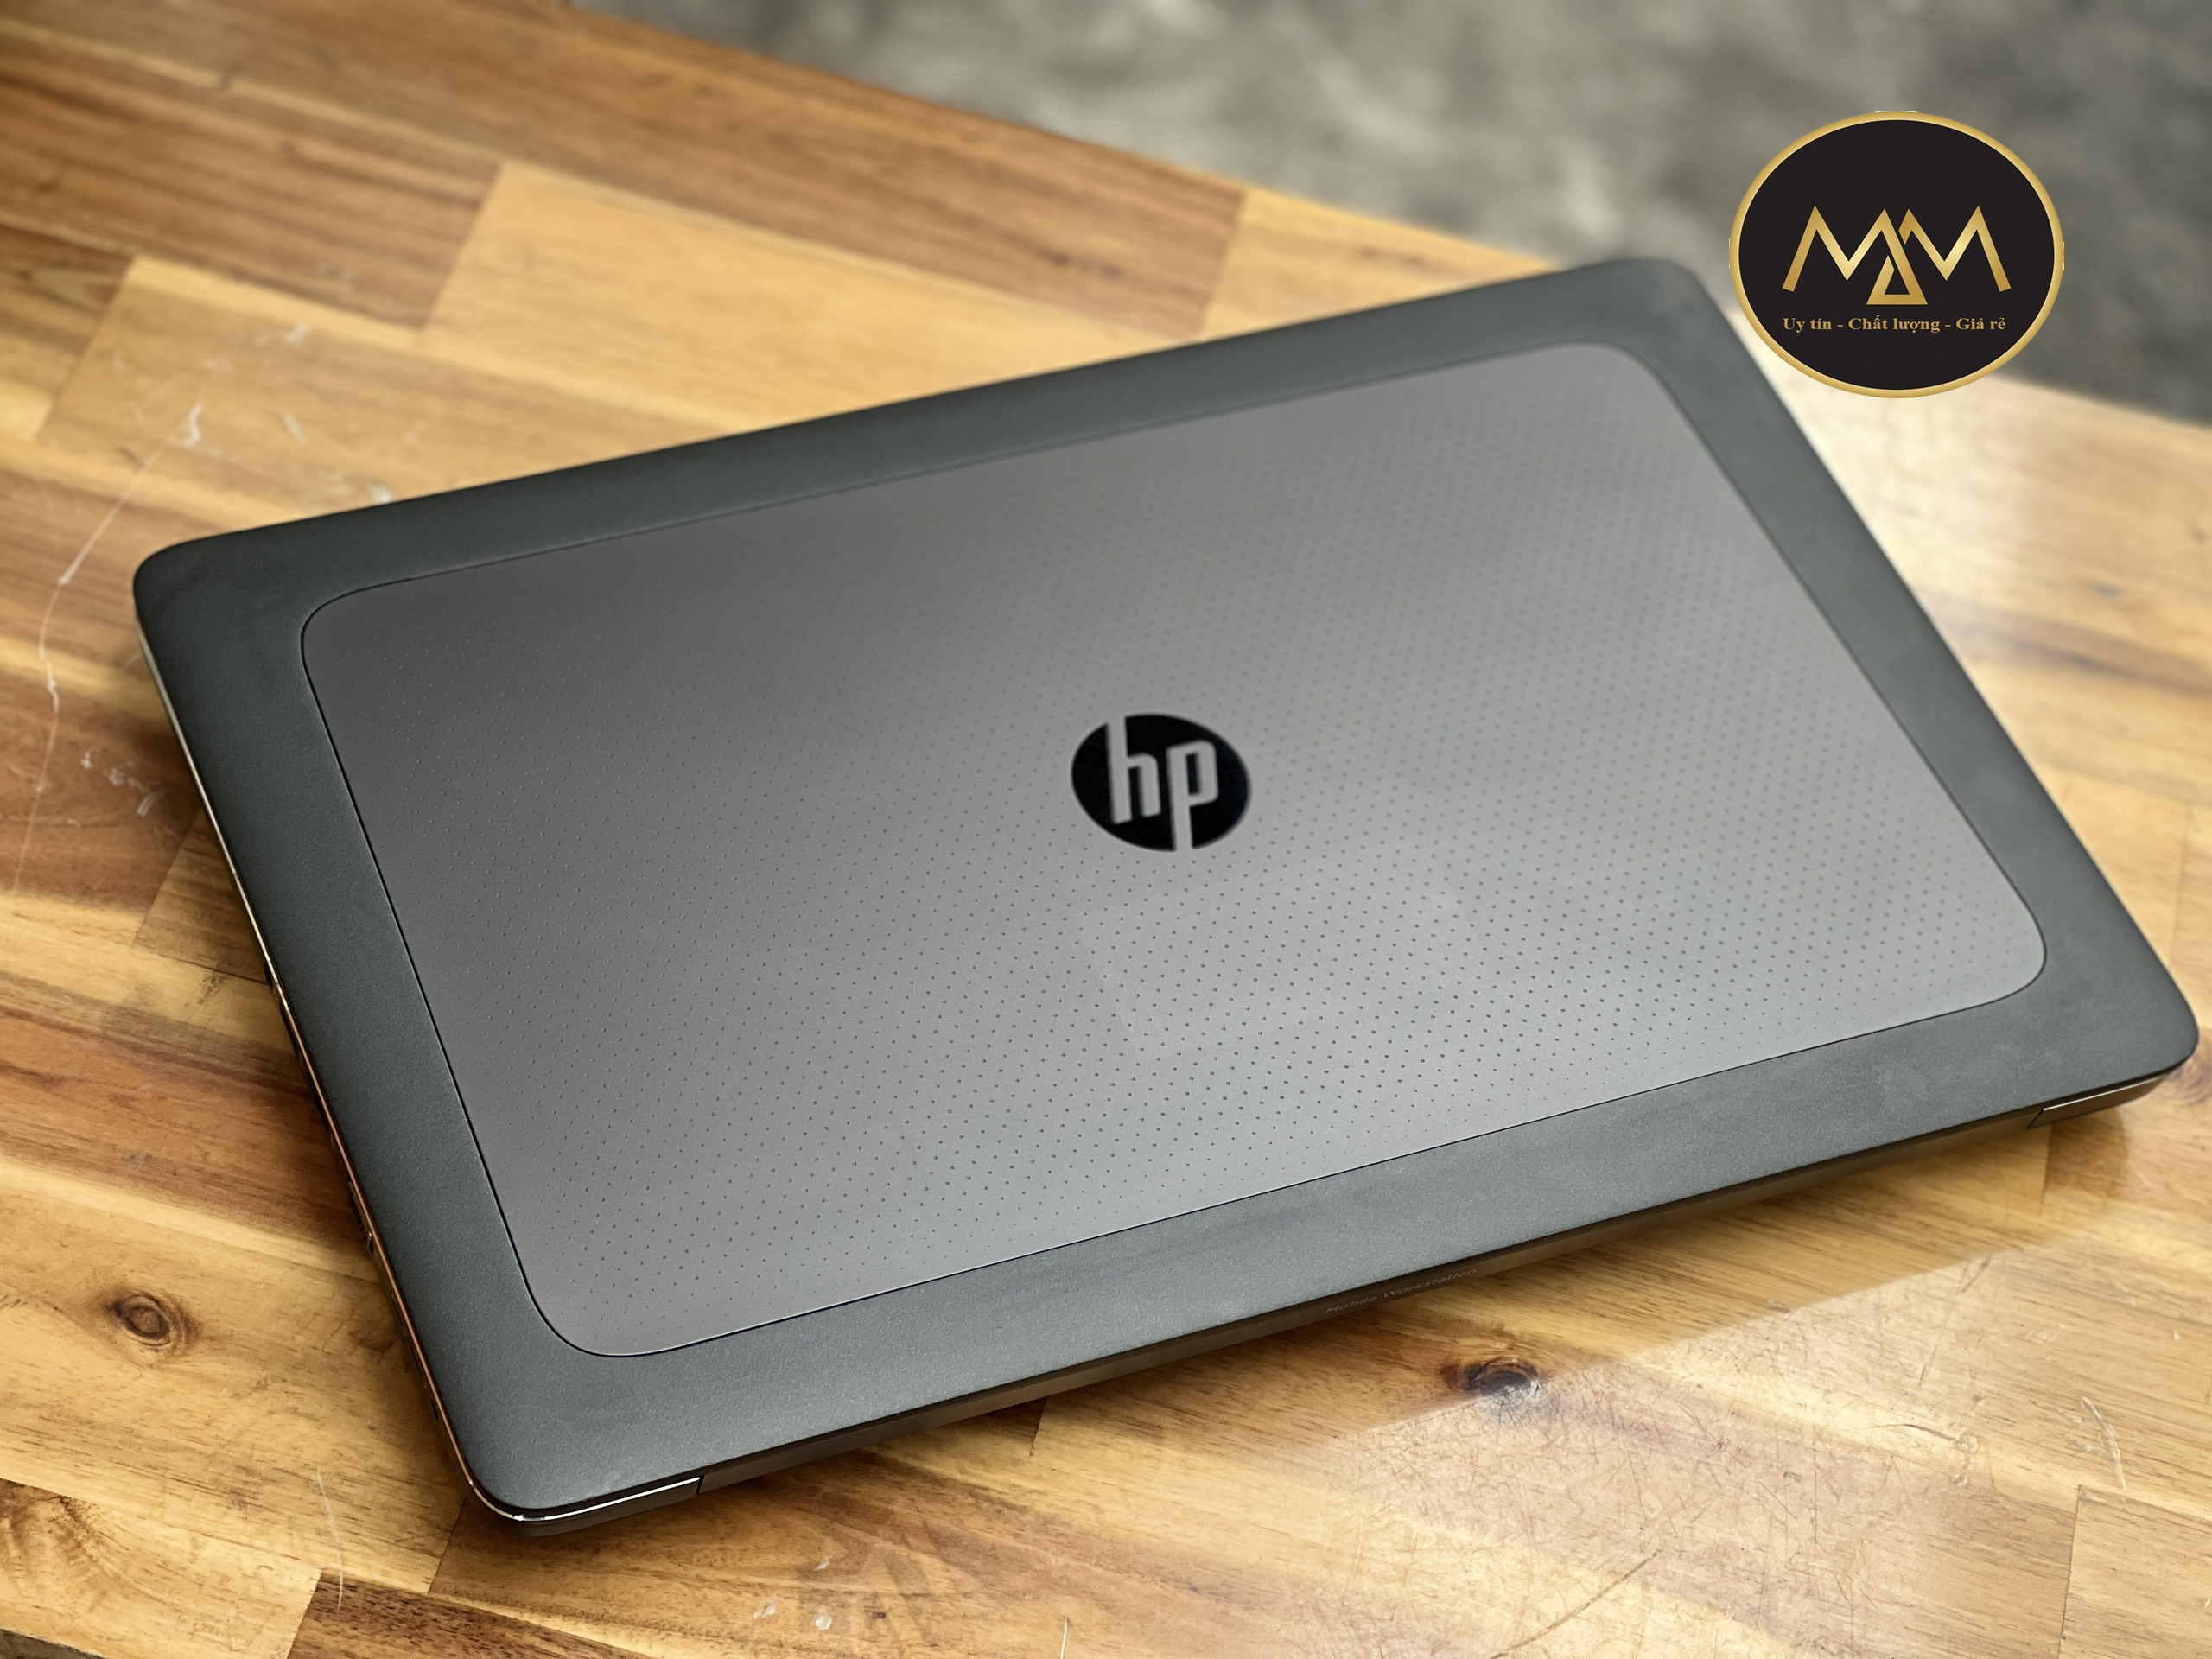 Laptop HP Workstation ZBook 17 G3 / i7 HQ/ Ram 16G/ SSD256/ Quadro M1000M - M12000/ 17.3in/ Chuyên Render 3D Đồ Họa4